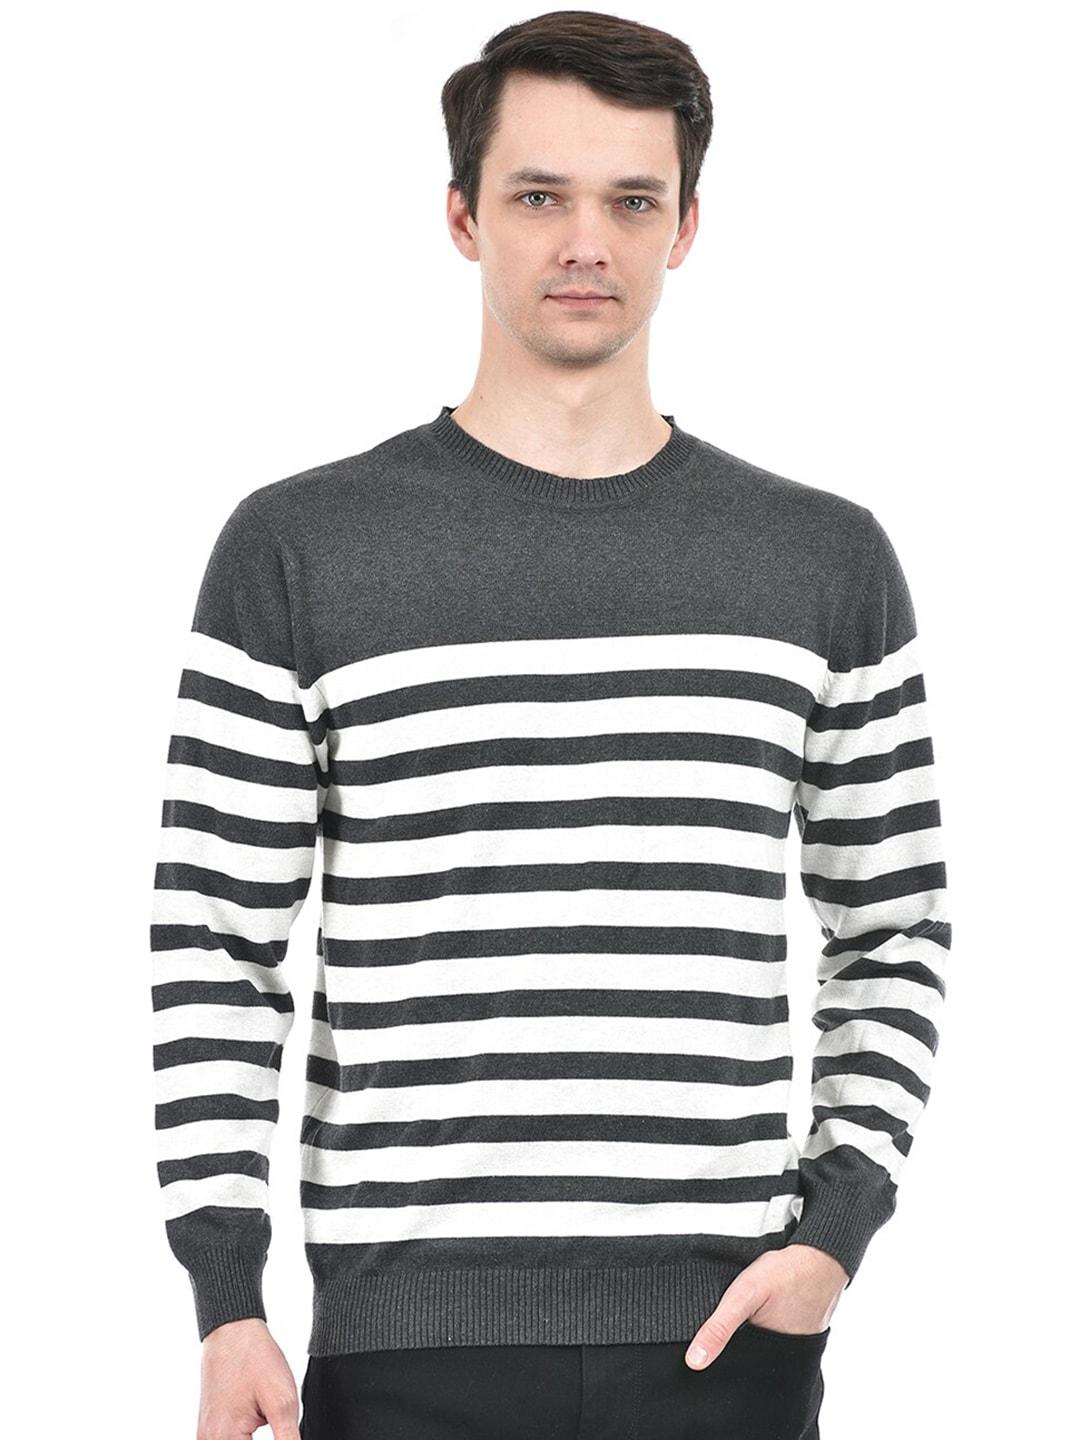 integriti-men-striped-pullover